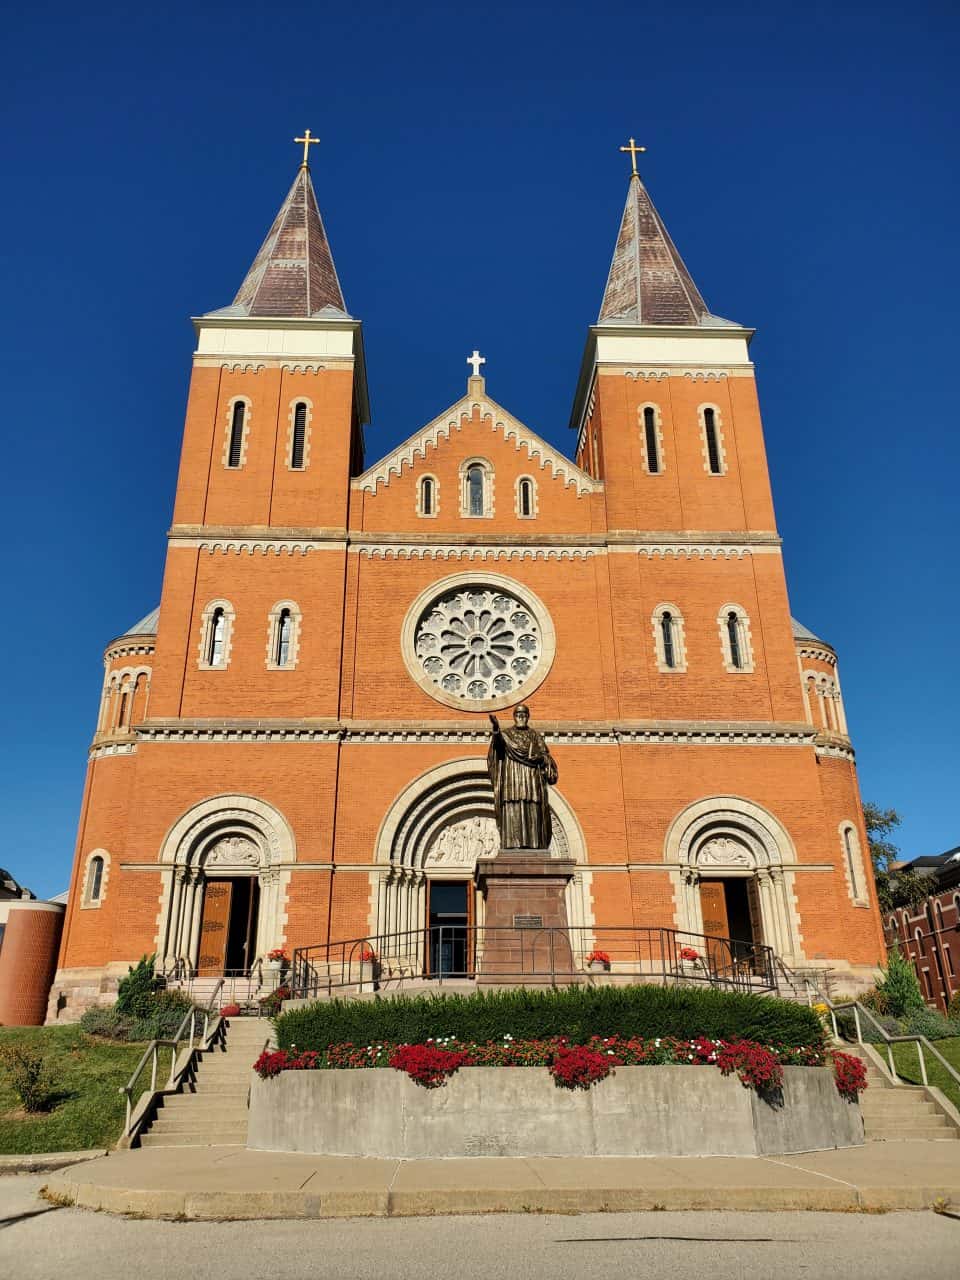 St. Vincent Archabbey Basilica